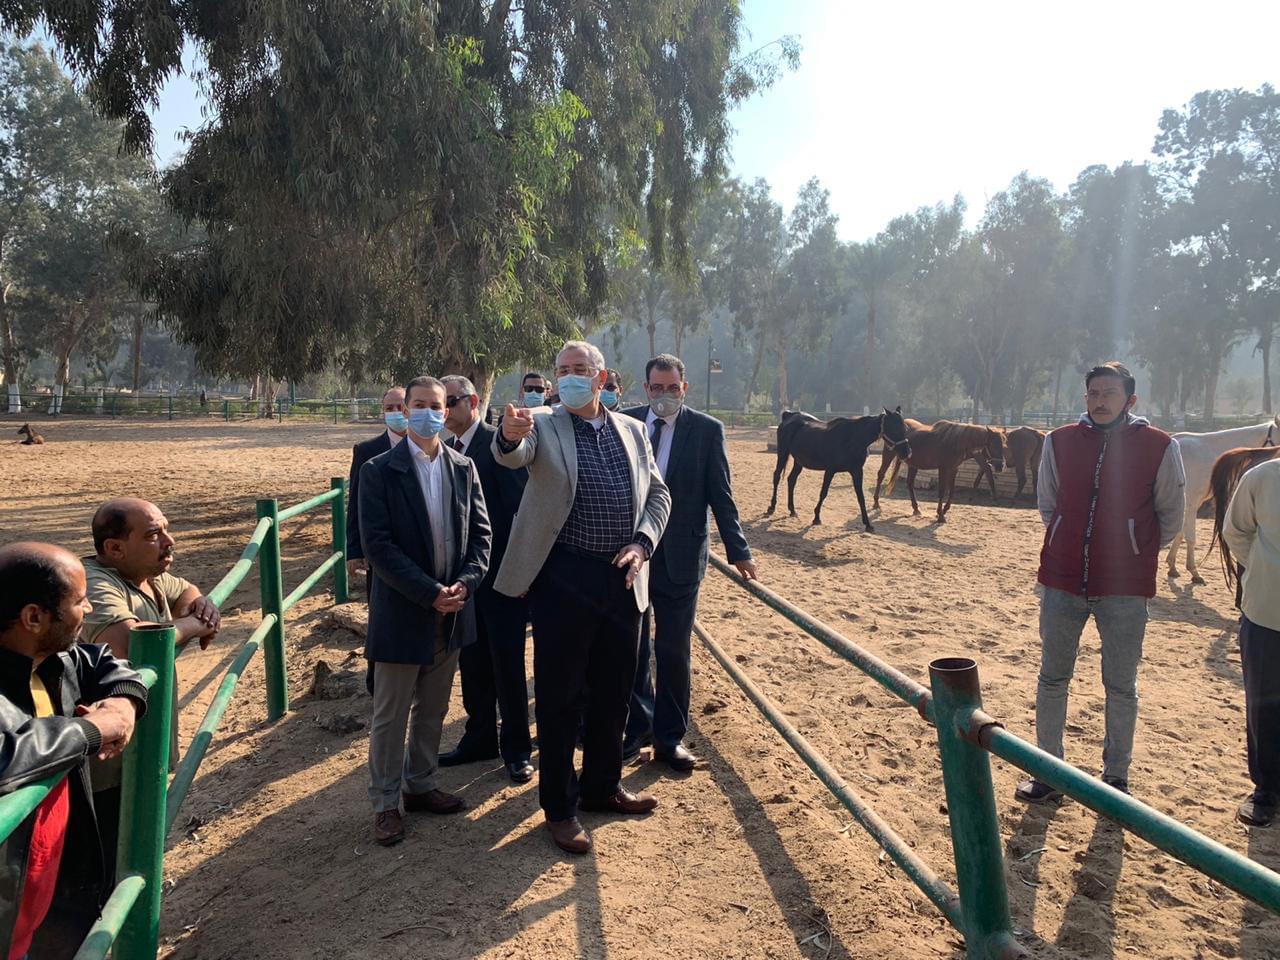 بالصور.. وزير الزراعة يطلب رفع كفاءة محطة الزهراء وتوفير رعاية صحية للخيول